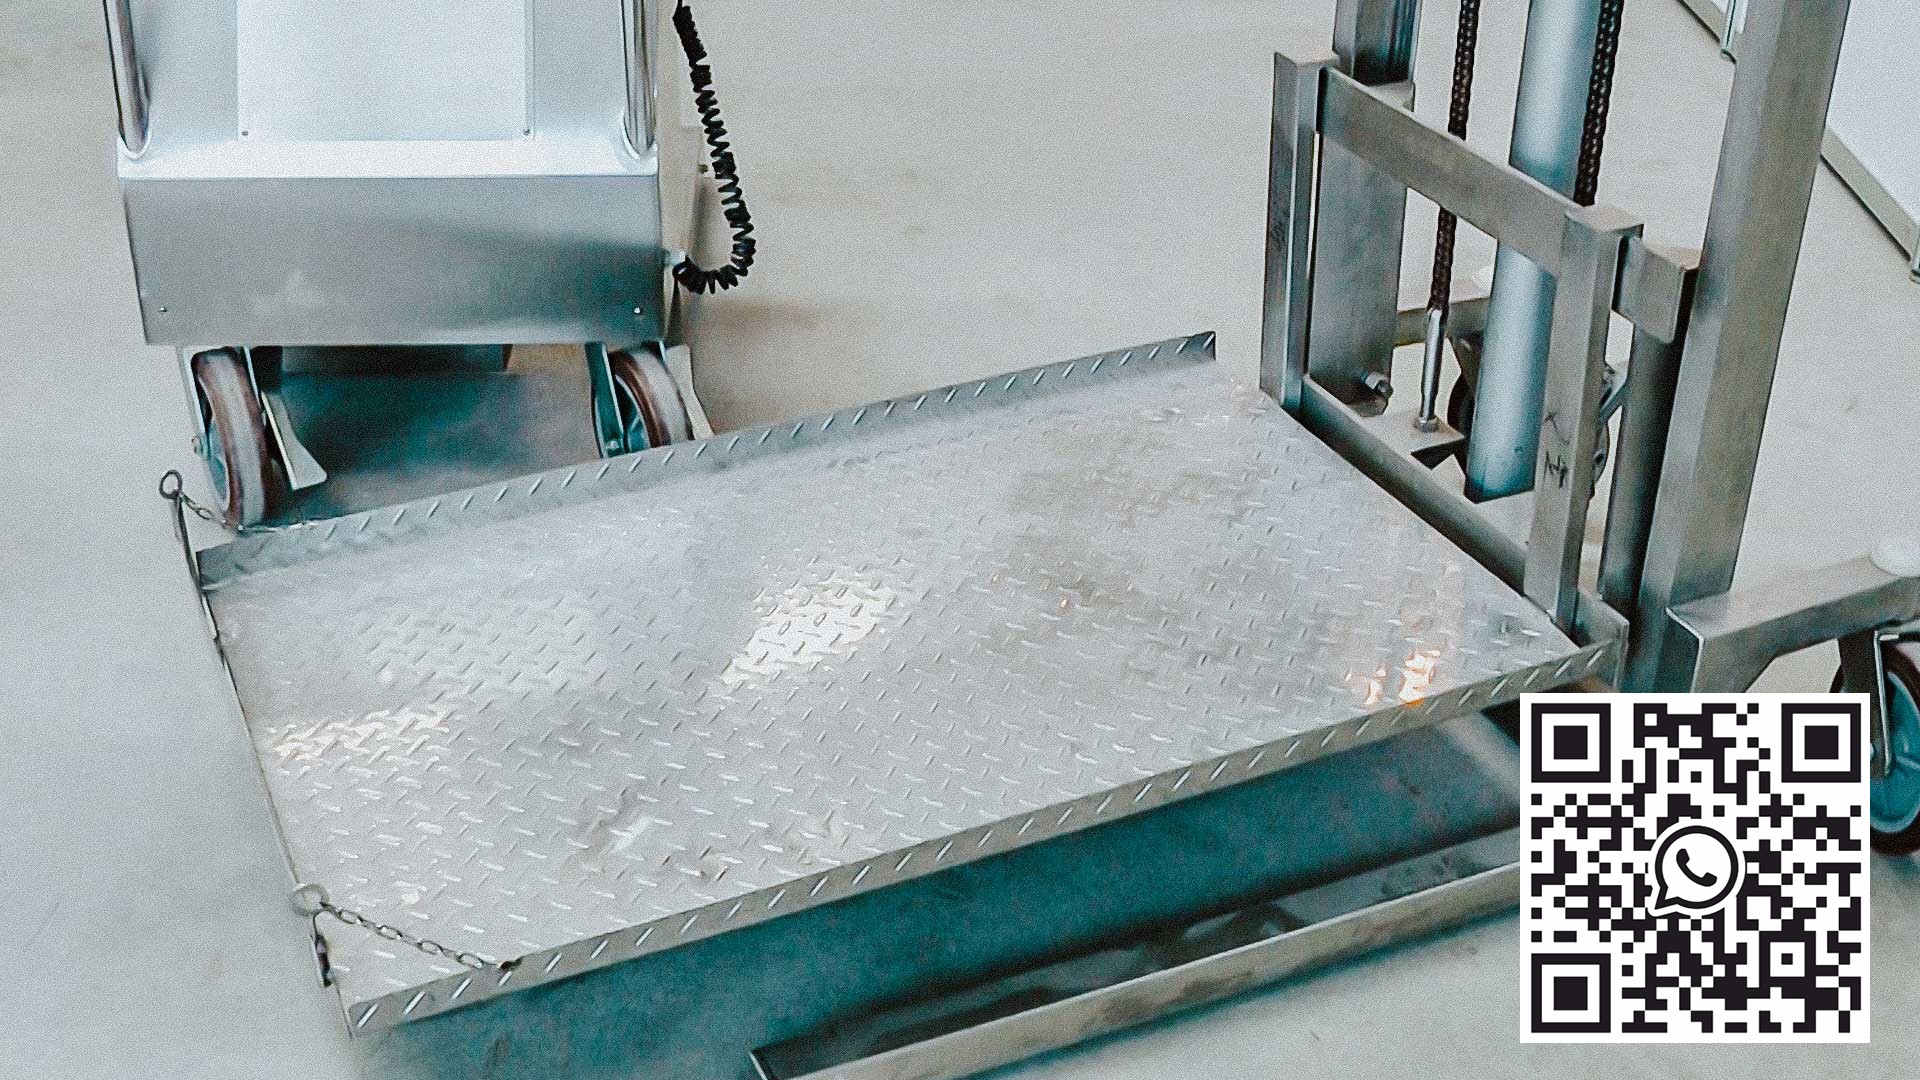 Recogida automática de envases de polvo en fábrica farmacéutica